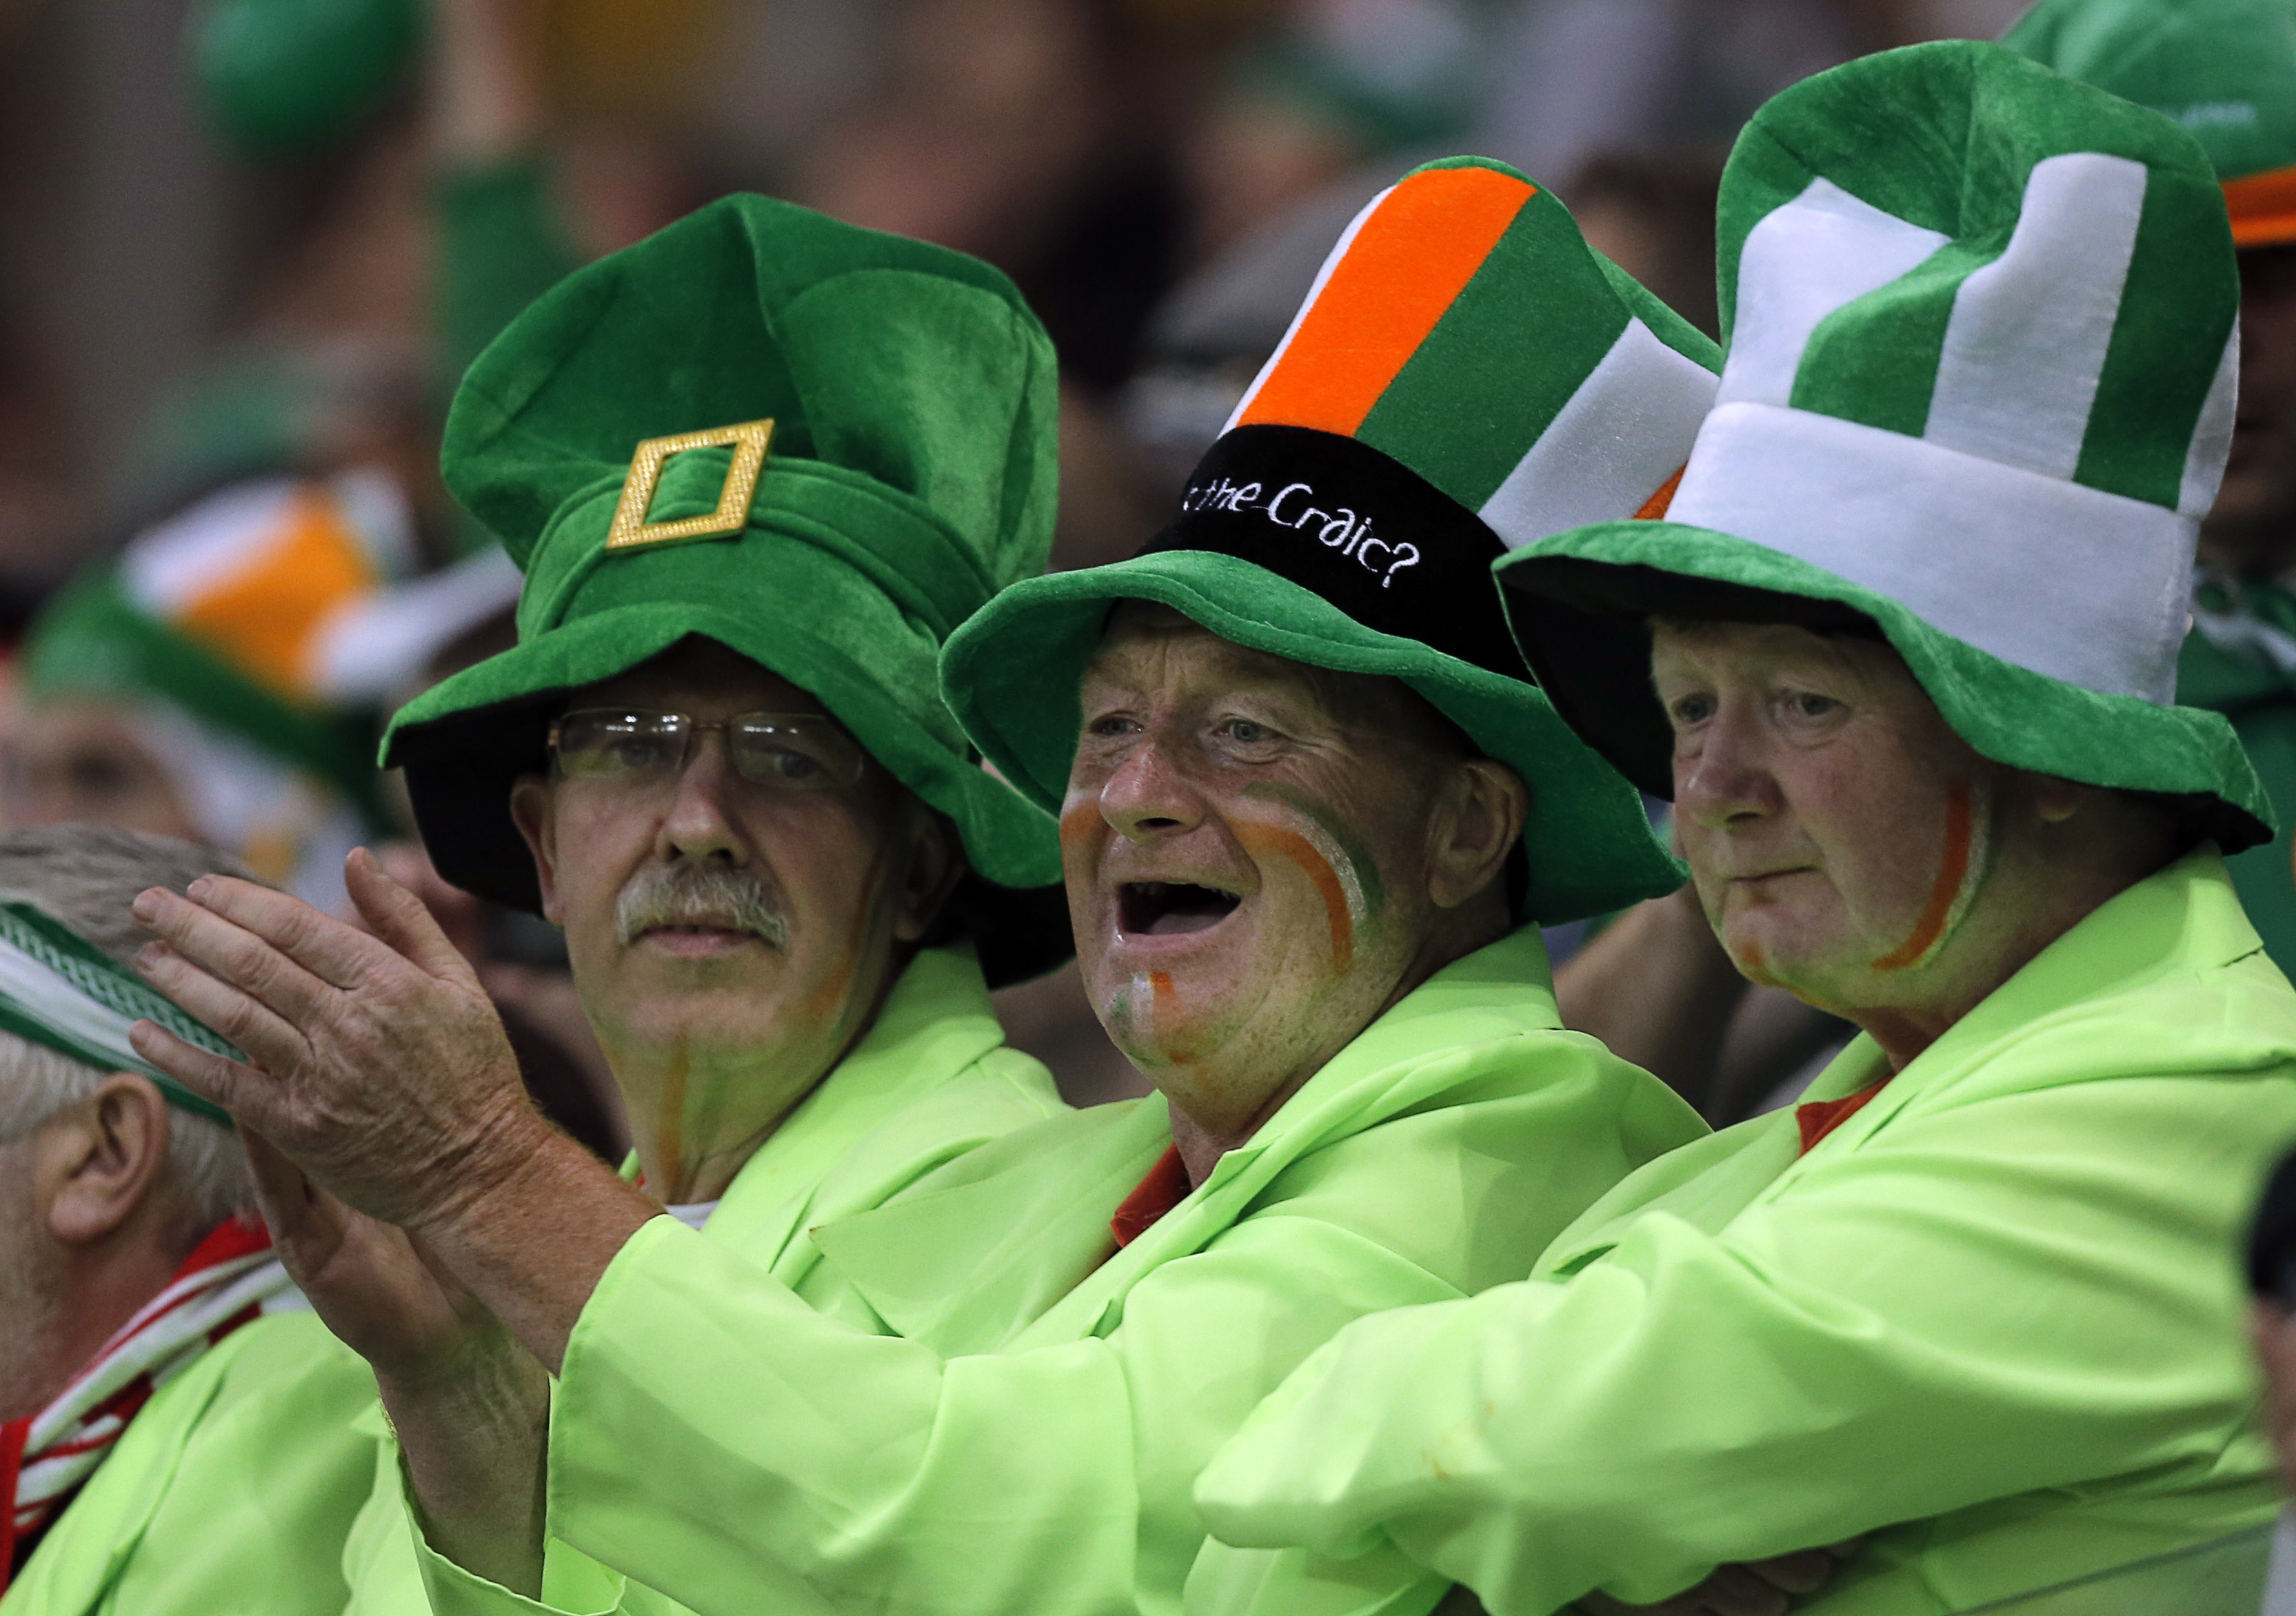 Den irländska fansen får ofta mycket beröm för sitt engagemang på läktaren.